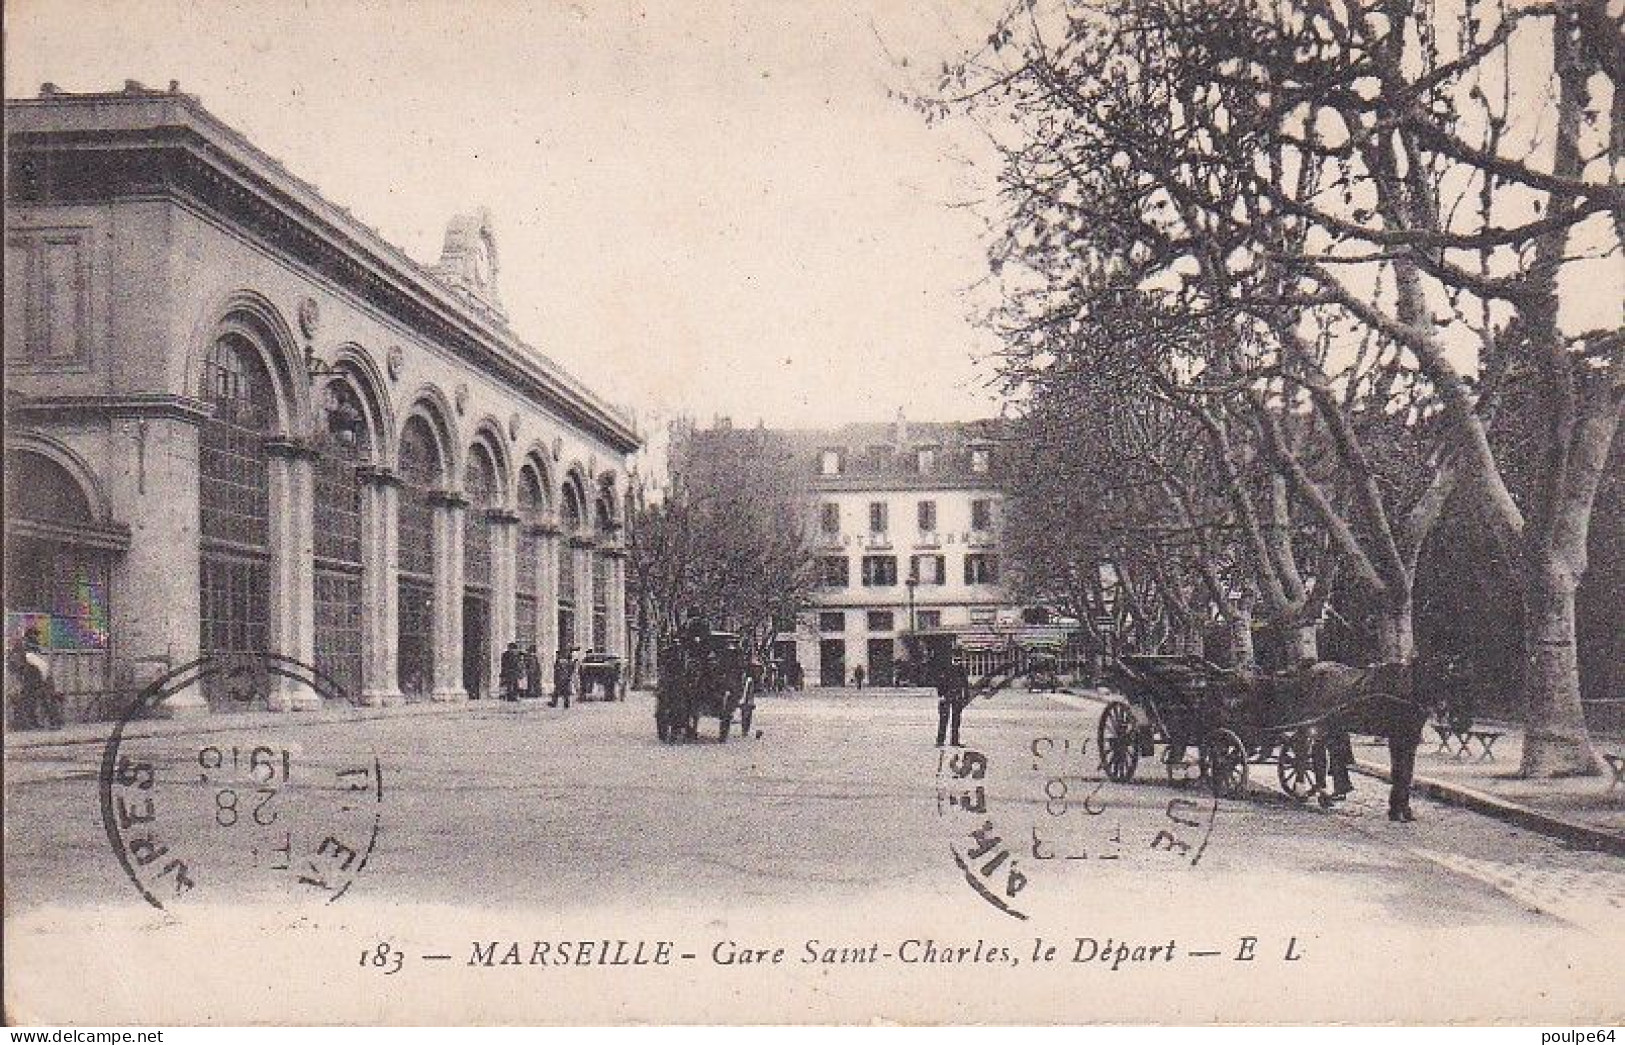 La Gare : Vue Extérieure - Stazione, Belle De Mai, Plombières